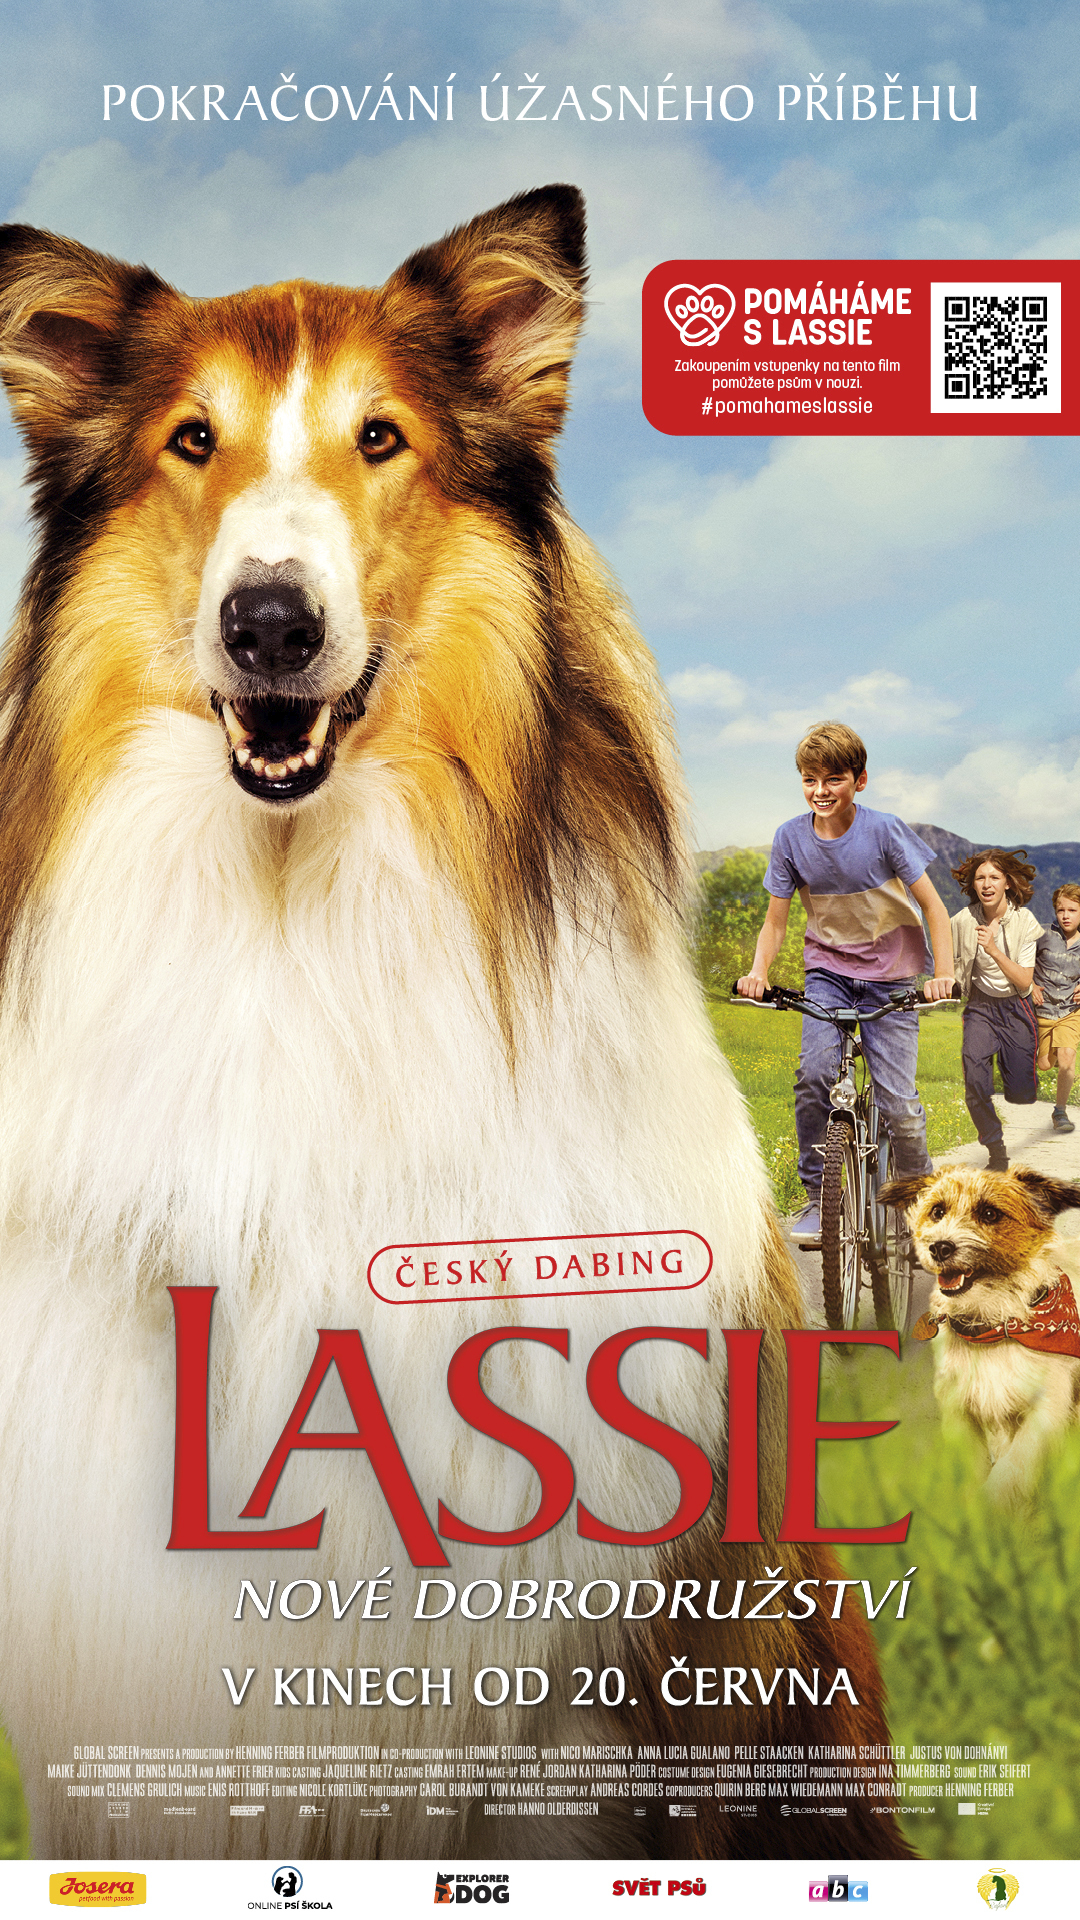 Plakát Lassie: Nové dobrodružství